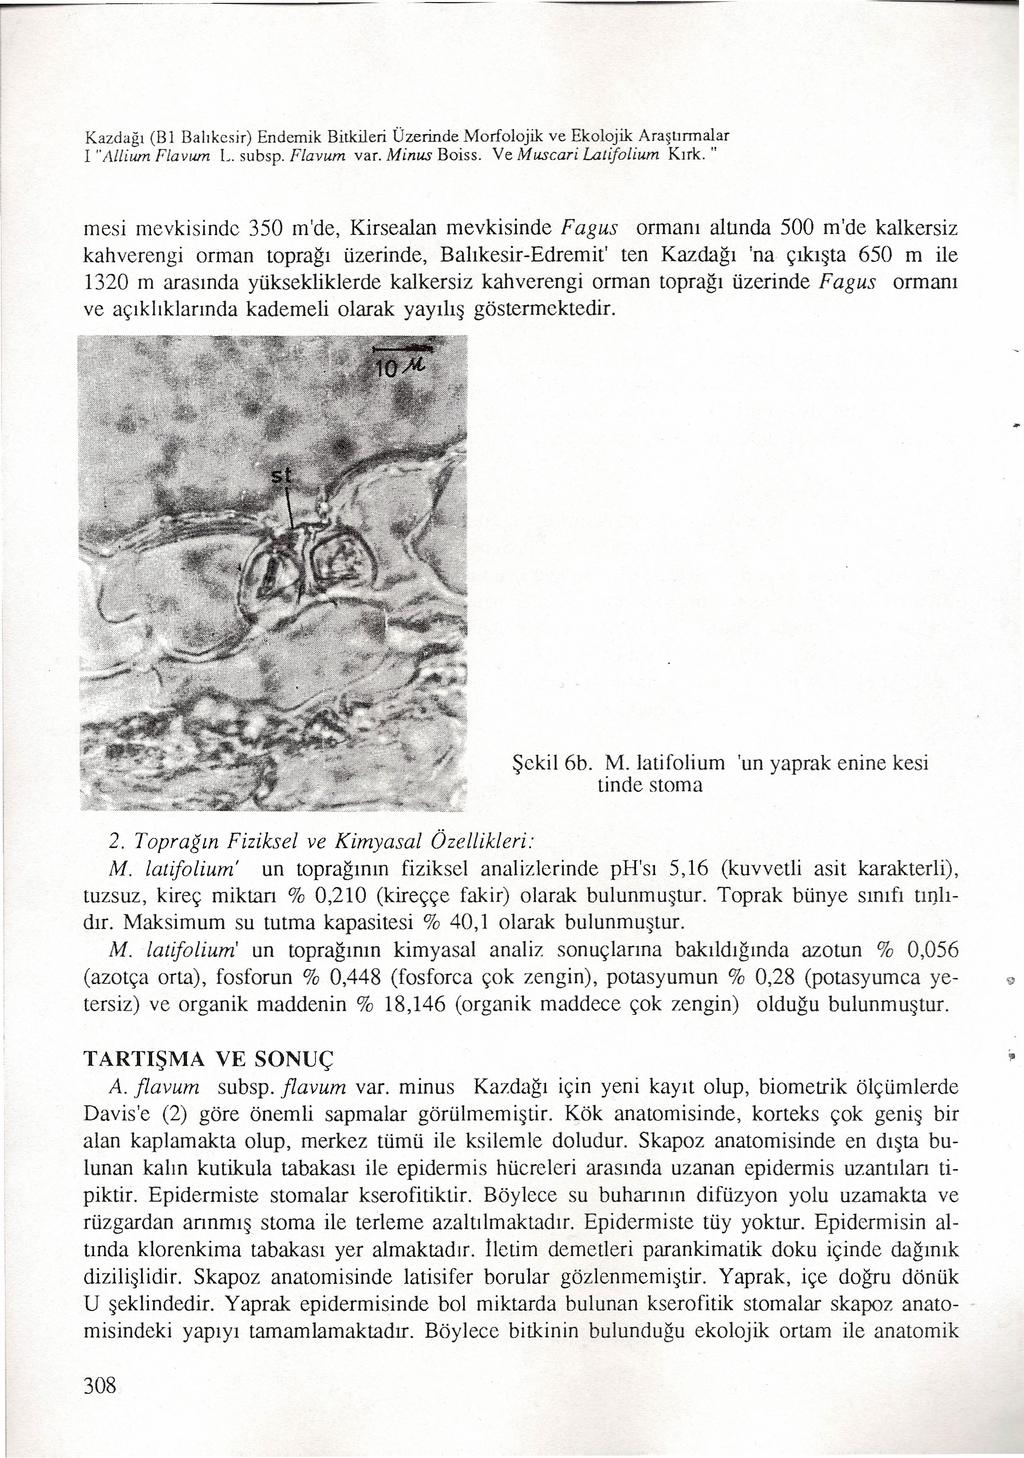 Kazdağı (B 1 Balıkesir) Endemik Bitkileri Üzerinde Morfolojik ve Ekolojik Araştırmalar i "Alllum Flavum L. subsp. Flavum var. Minus Boiss. Ve Muscari Latifolium Kırk.